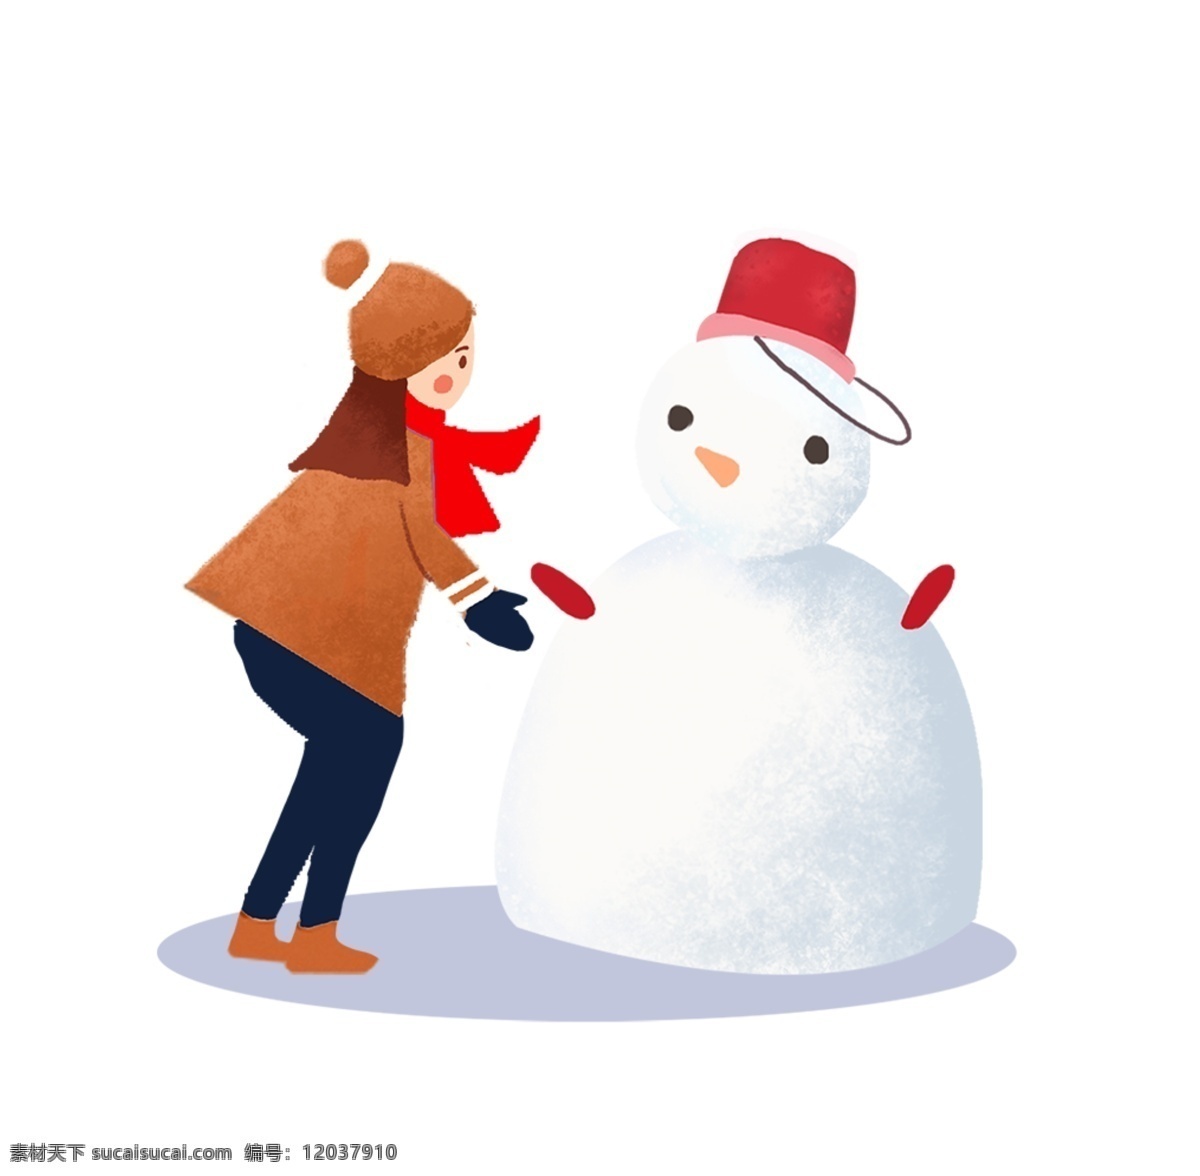 二十四节气 小雪 堆 雪人 主题 插画 卡通 手绘 精美 海报插画 广告插画 小清新 简约风 装饰图案 堆雪人